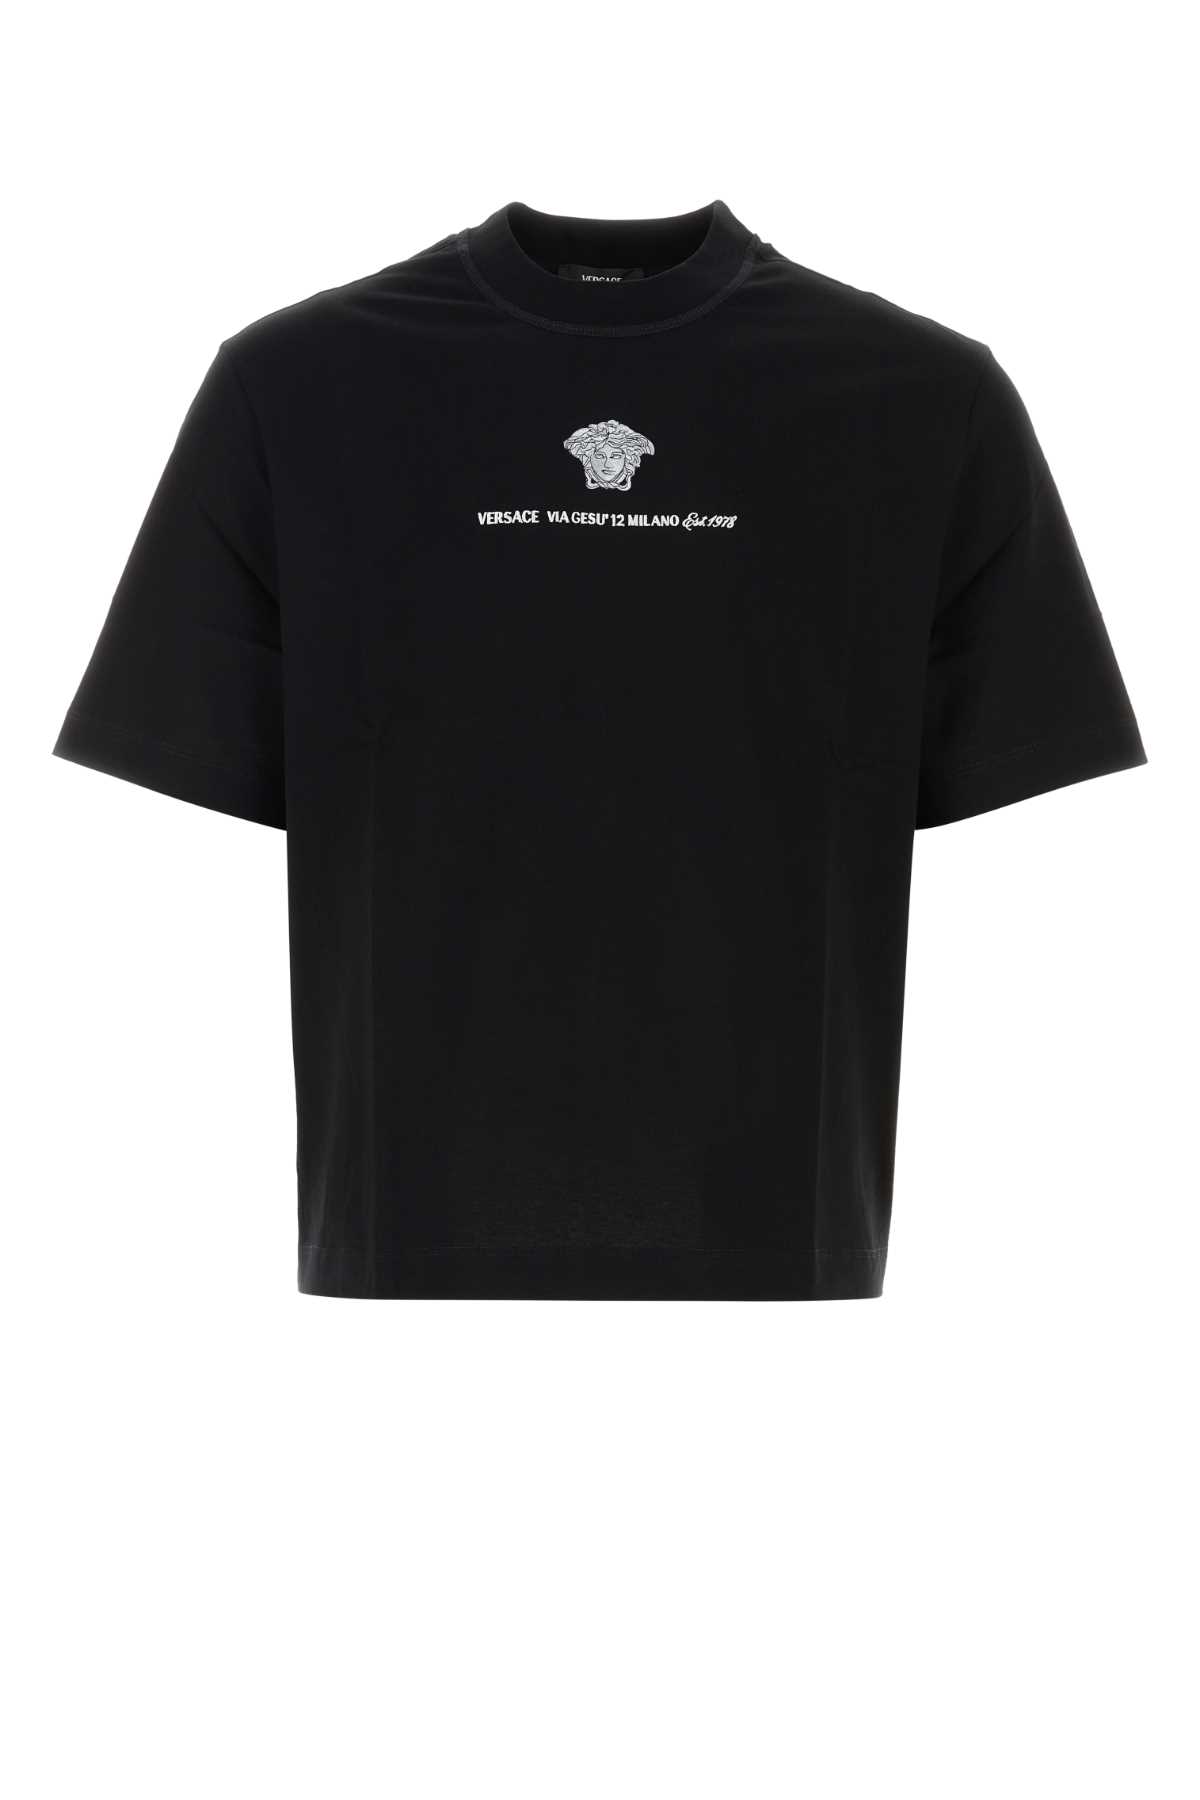 Versace Black Cotton T-shirt